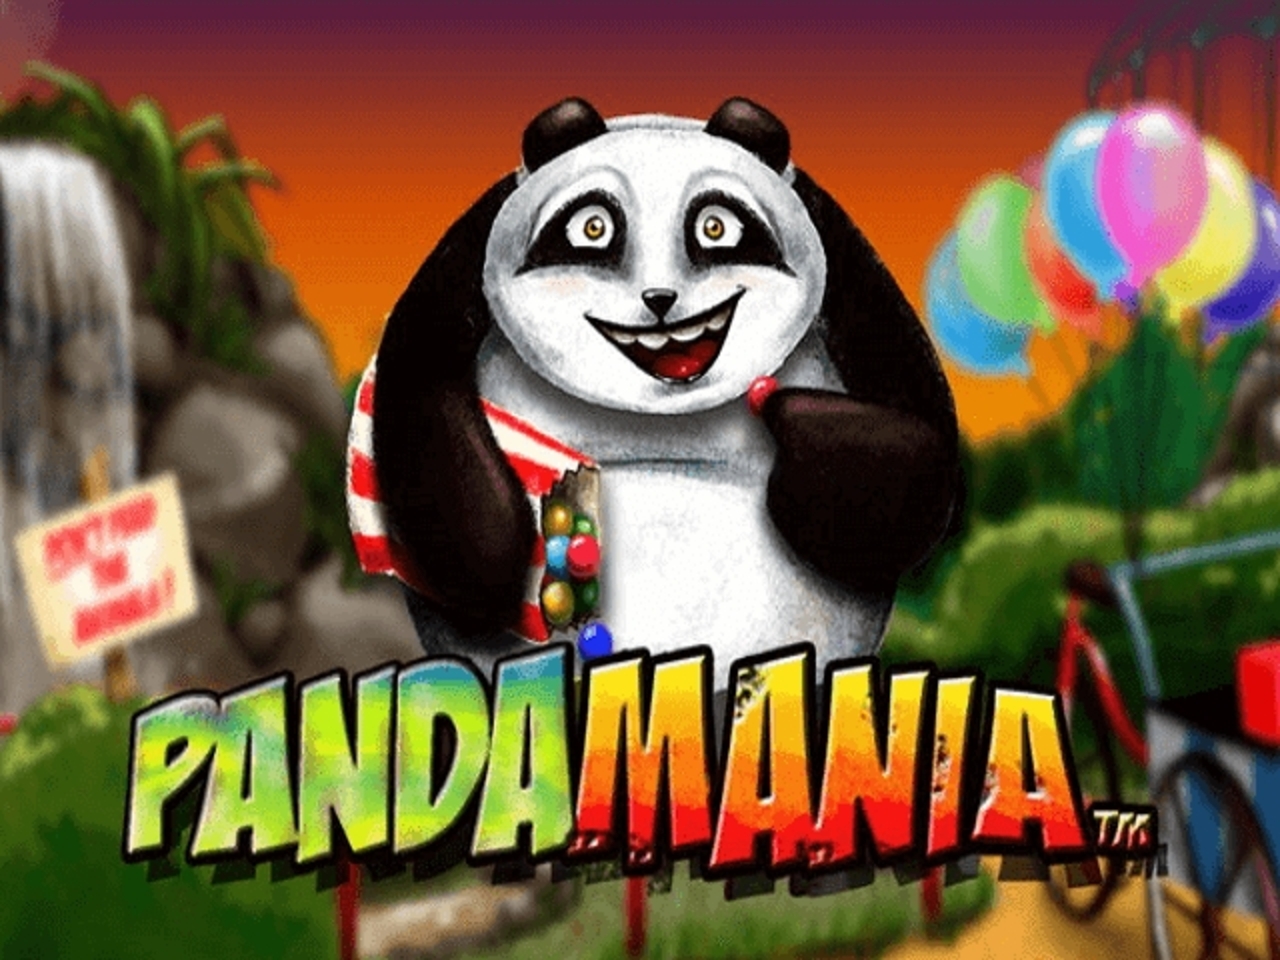 Pandamania demo